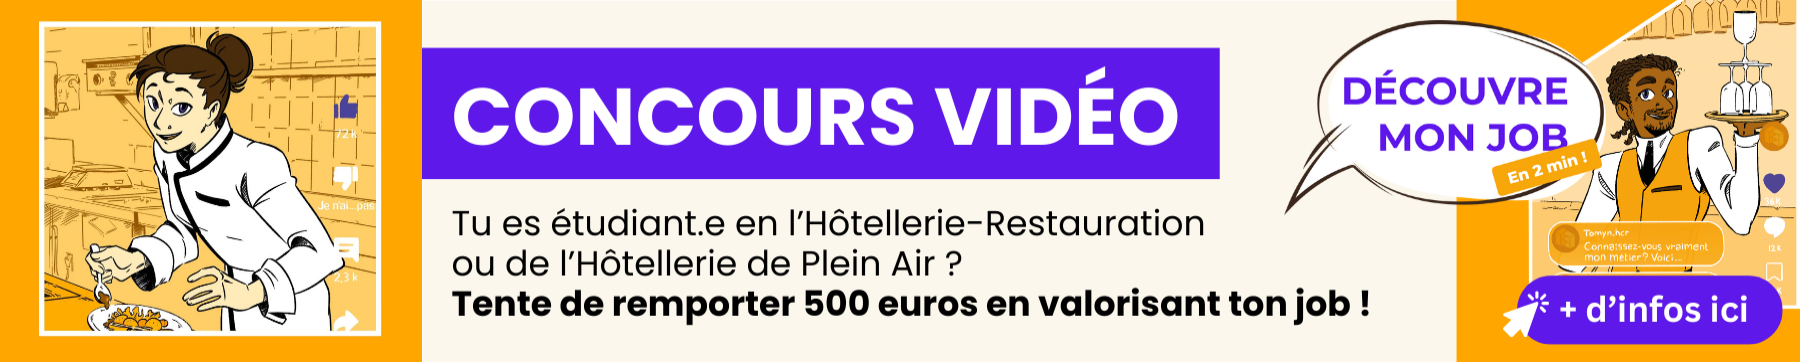 Bannière pour un concours "Découvrez mon Job" organisé en Pays de la Loire. Le but du jeu ? Réaliser une vidéo de 2 minutes pour découvrir un métier de l'Hôtellerie, de l'Hébergement de Plein Air ou de la Restauration. 